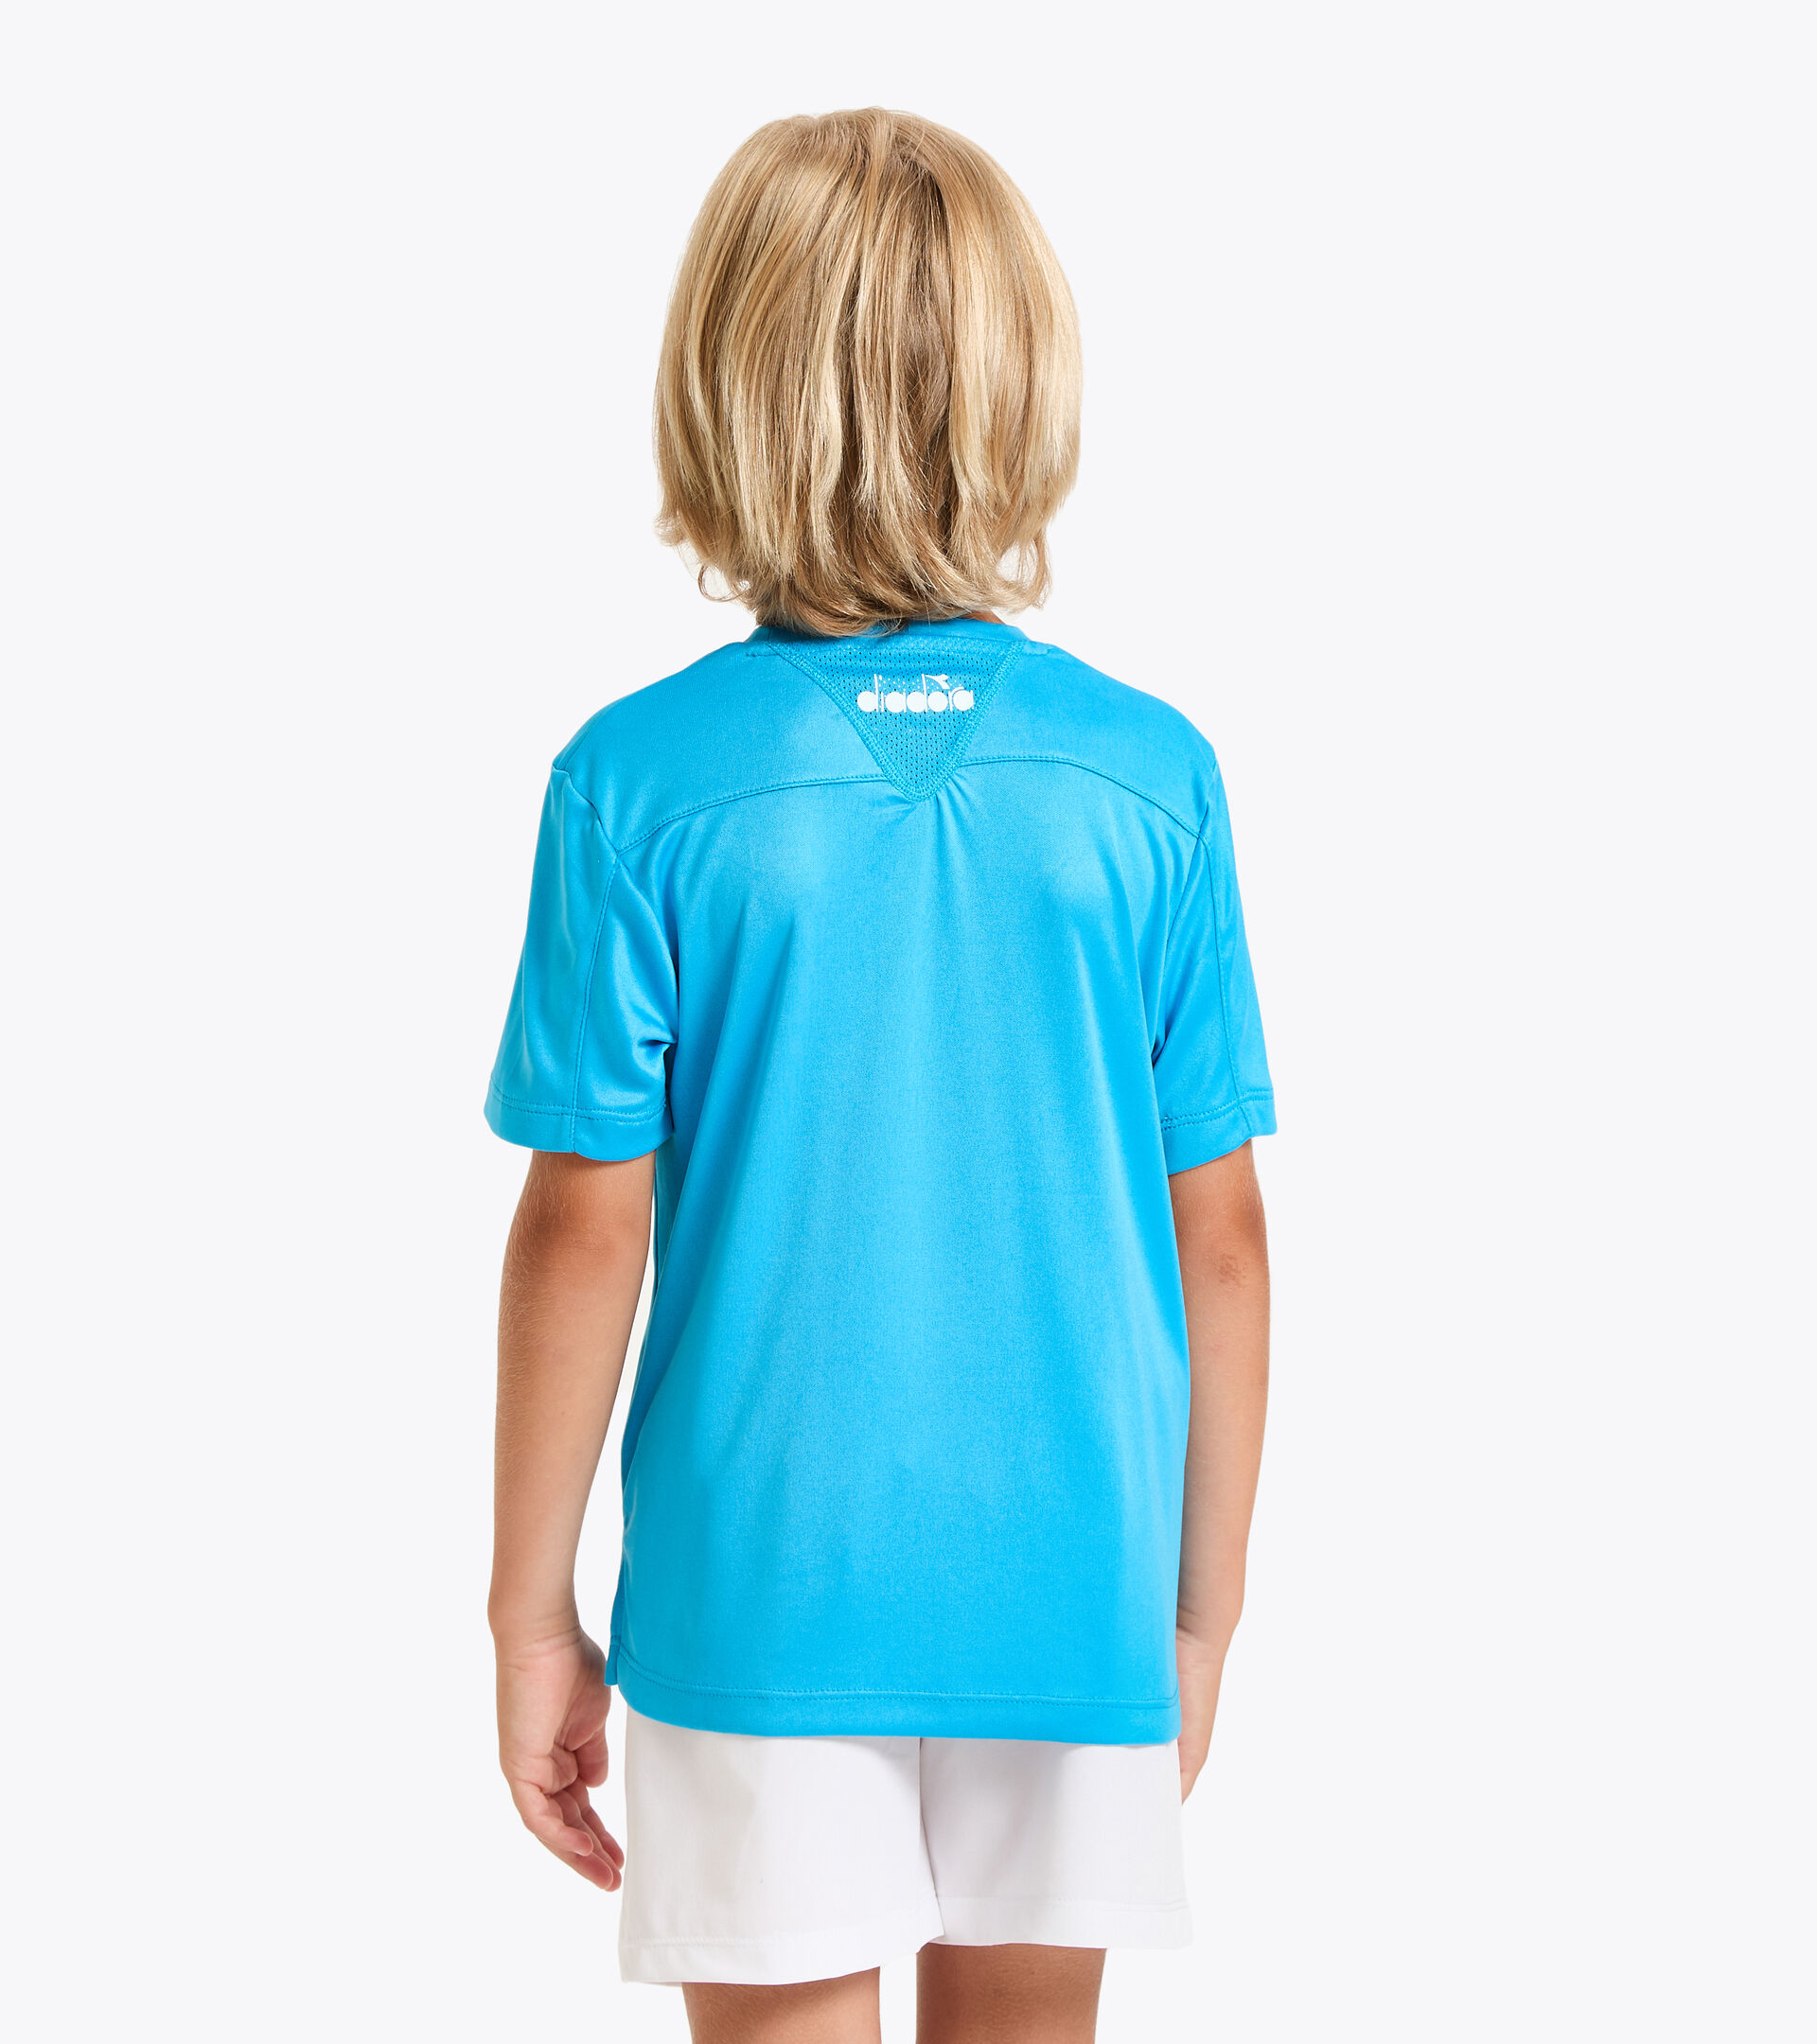 Camiseta de tenis - Junior J. T-SHIRT TEAM AZUL REAL FLUO - Diadora